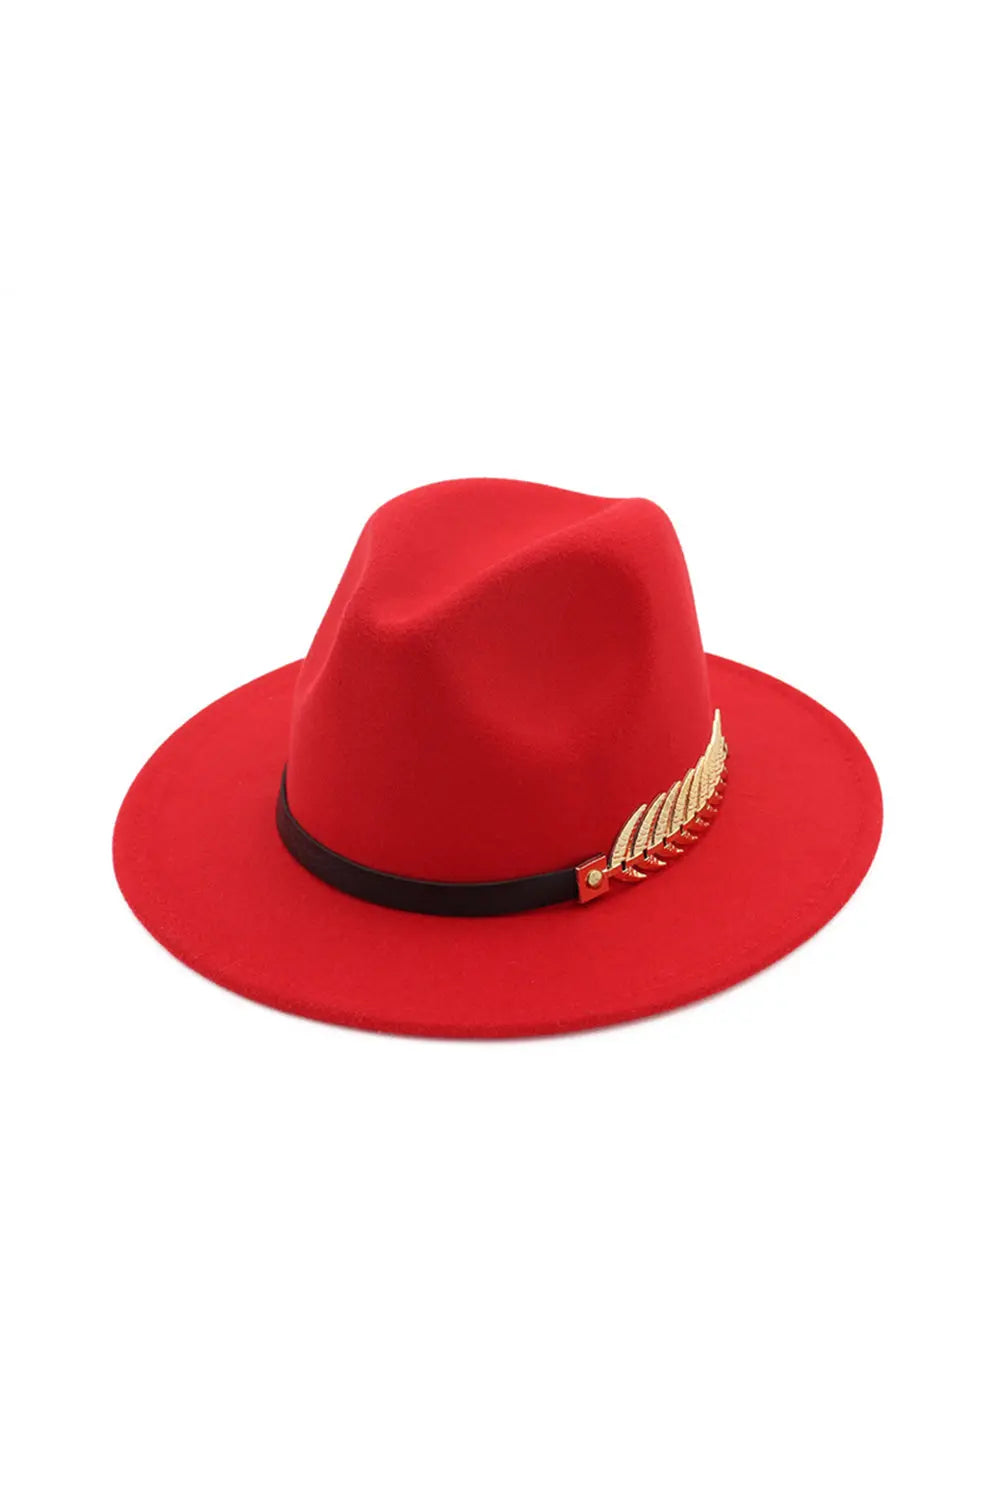 Jazz Hat - Red - Strange Clothes